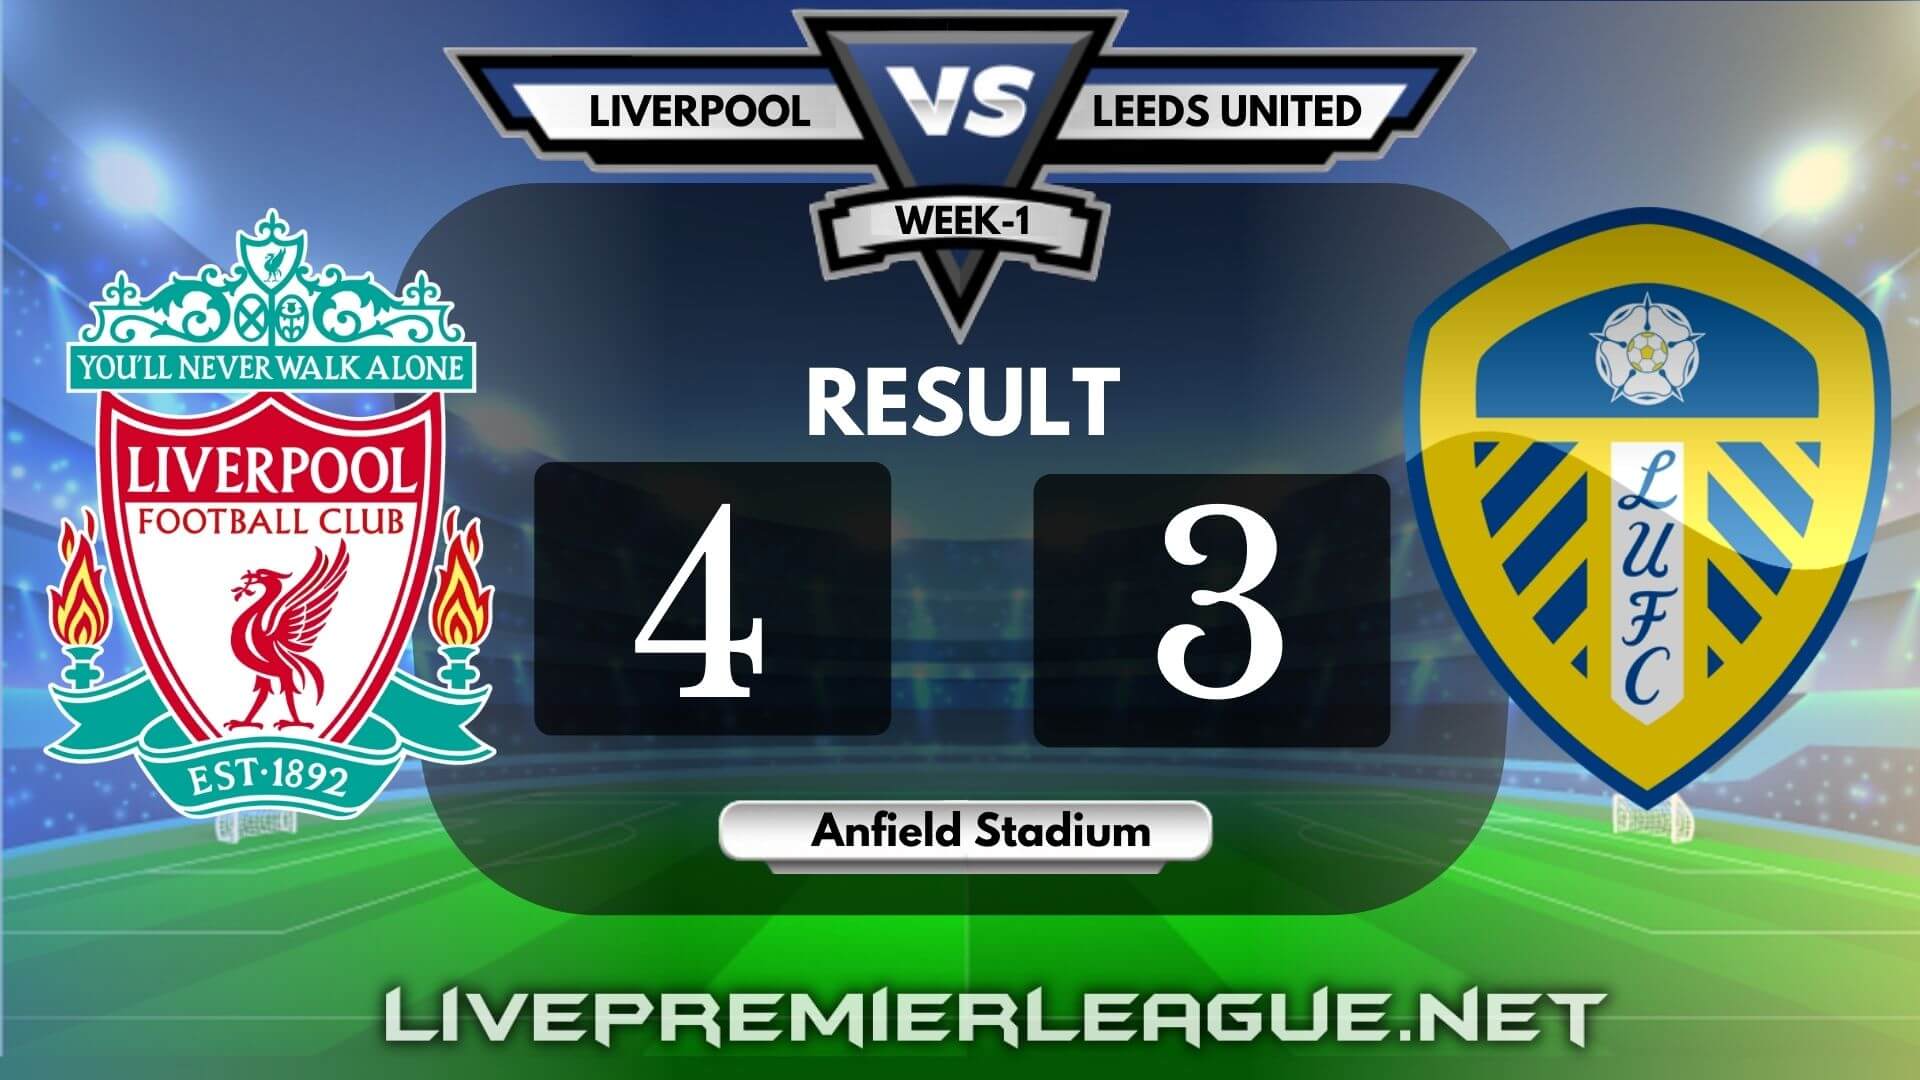 Liverpool Vs Leeds United | Week 1 Result 2020